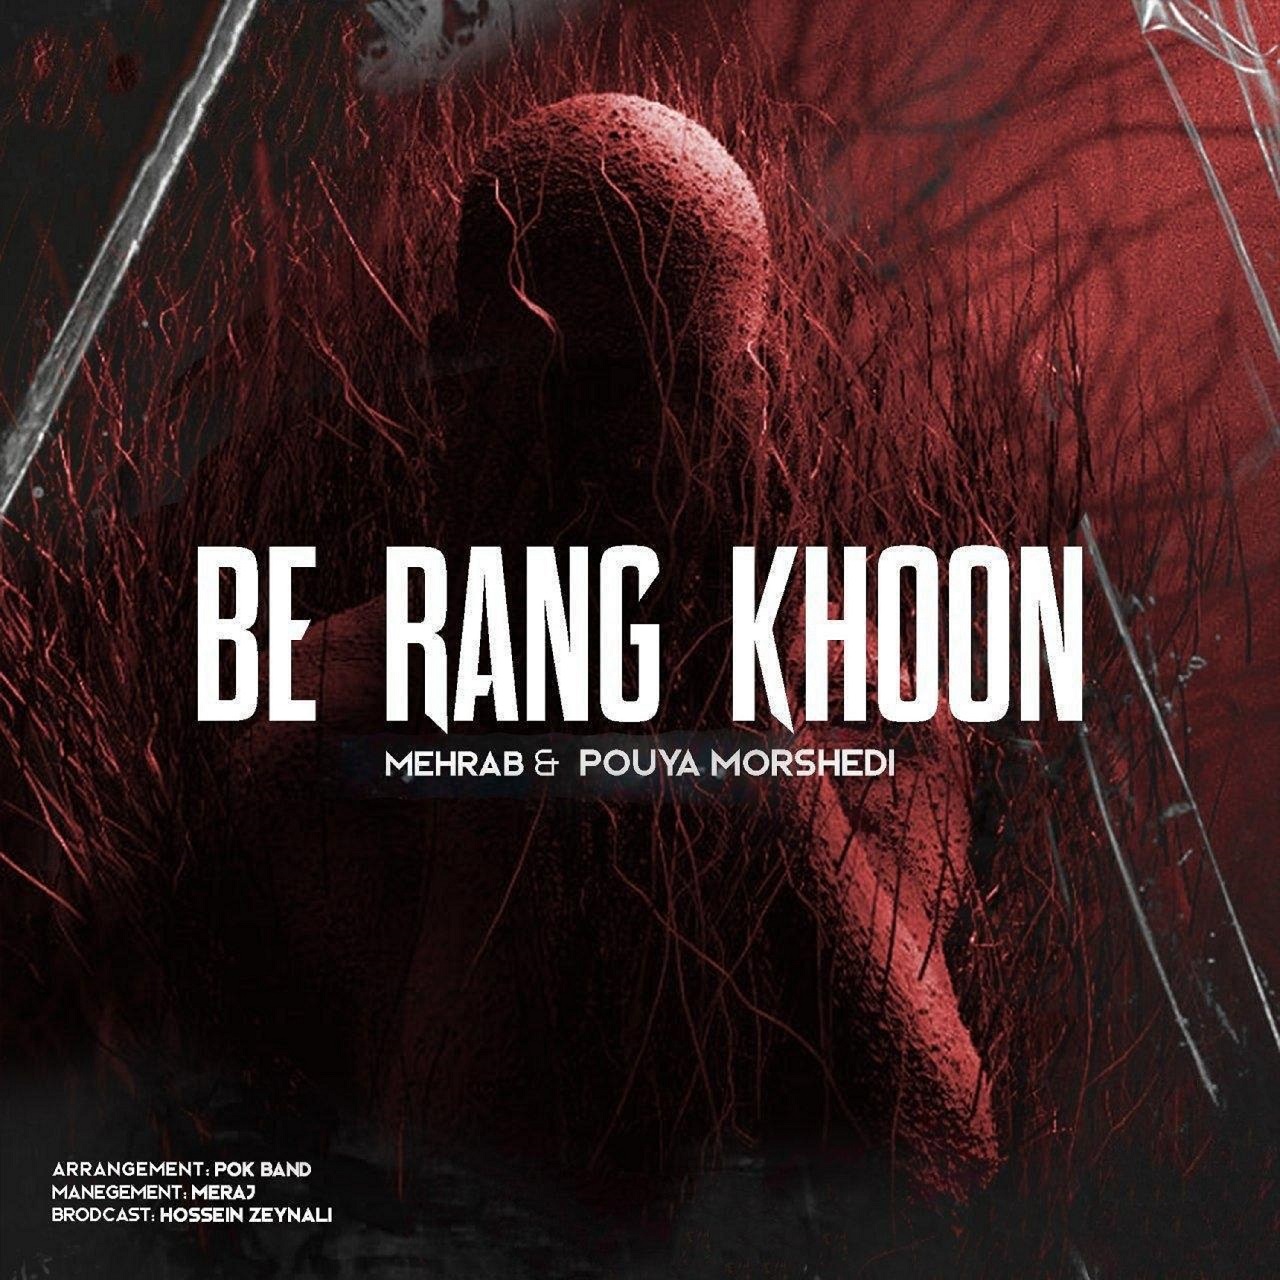  دانلود آهنگ جدید مهراب - به رنگ خون | Download New Music By Mehrab - Be Rang Khoon (feat. Pouya Morshedi)